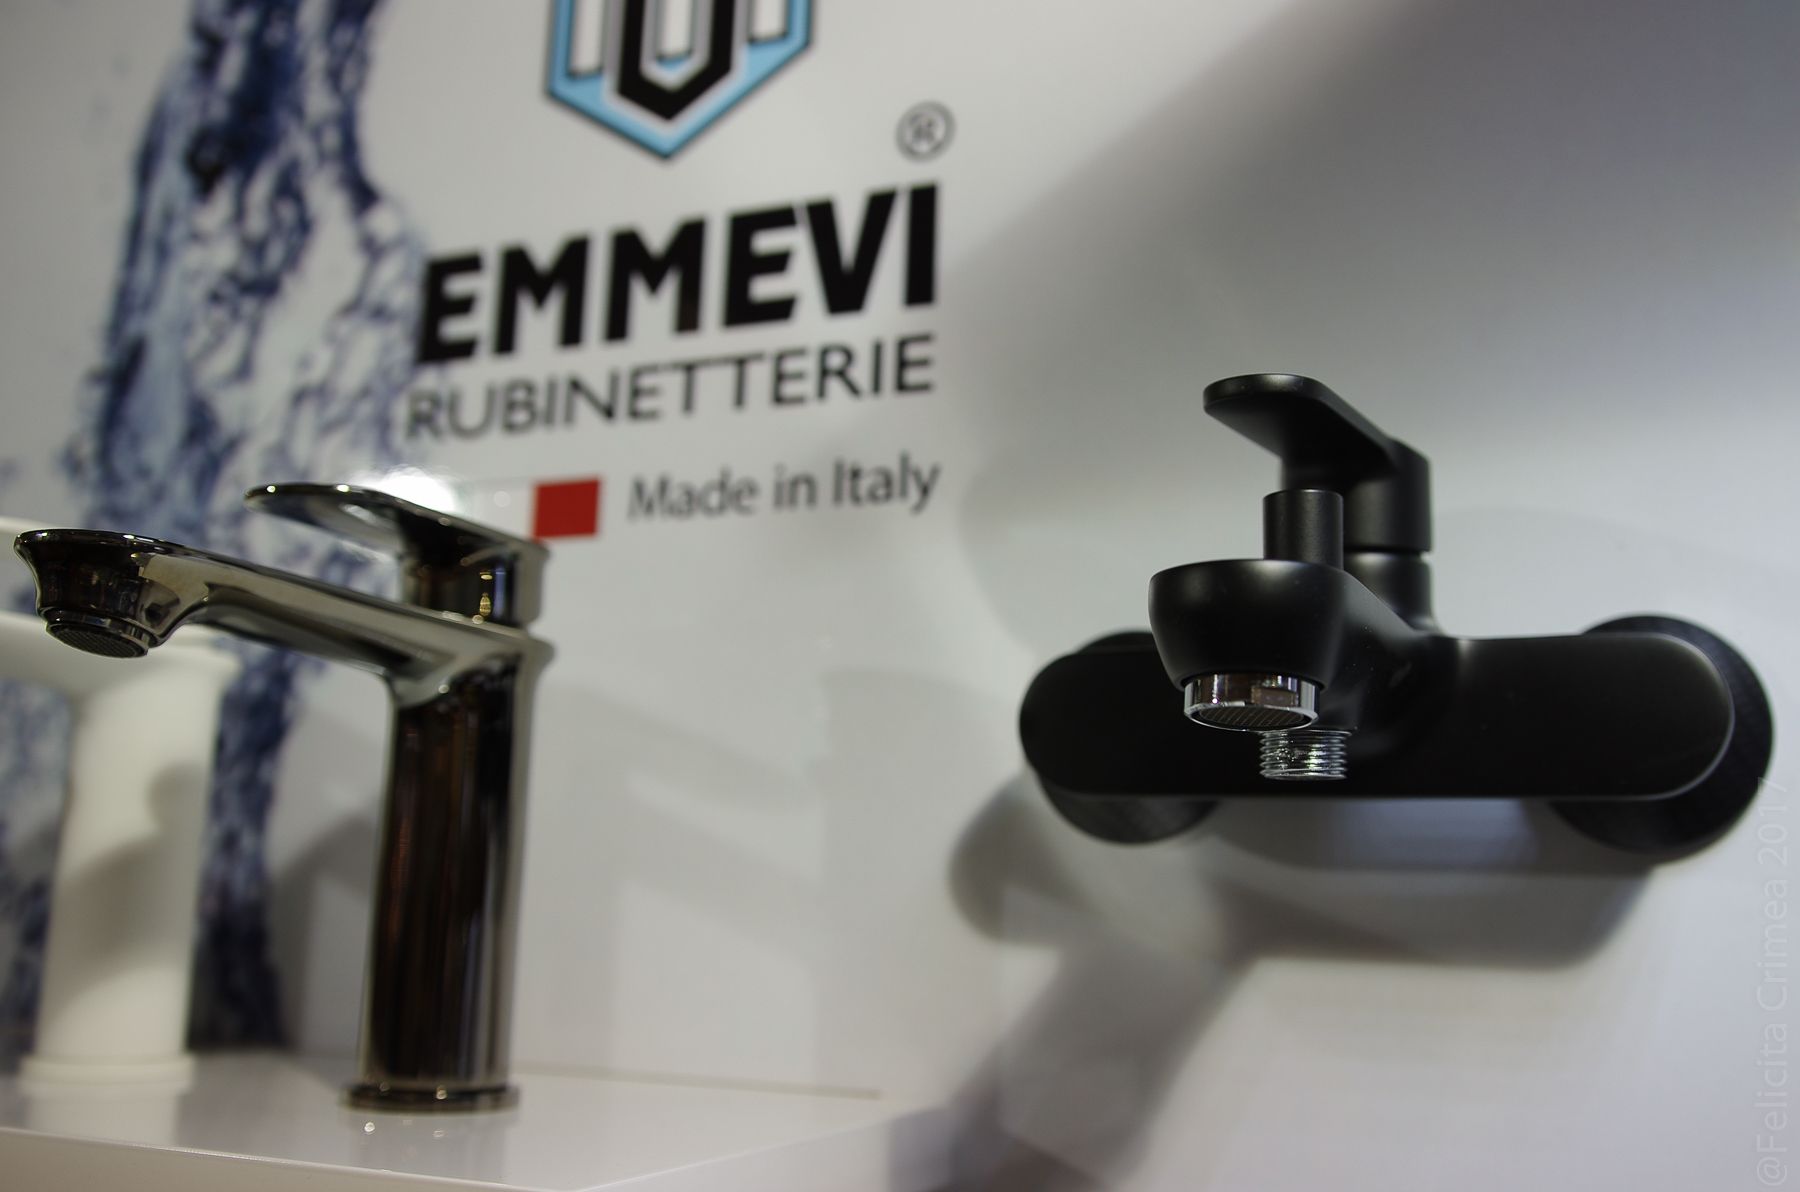 Moderno Emmevi предлагаются не только в покрытии хром, но и другие покрытия, такие как и черный матовый и цвет карбон 